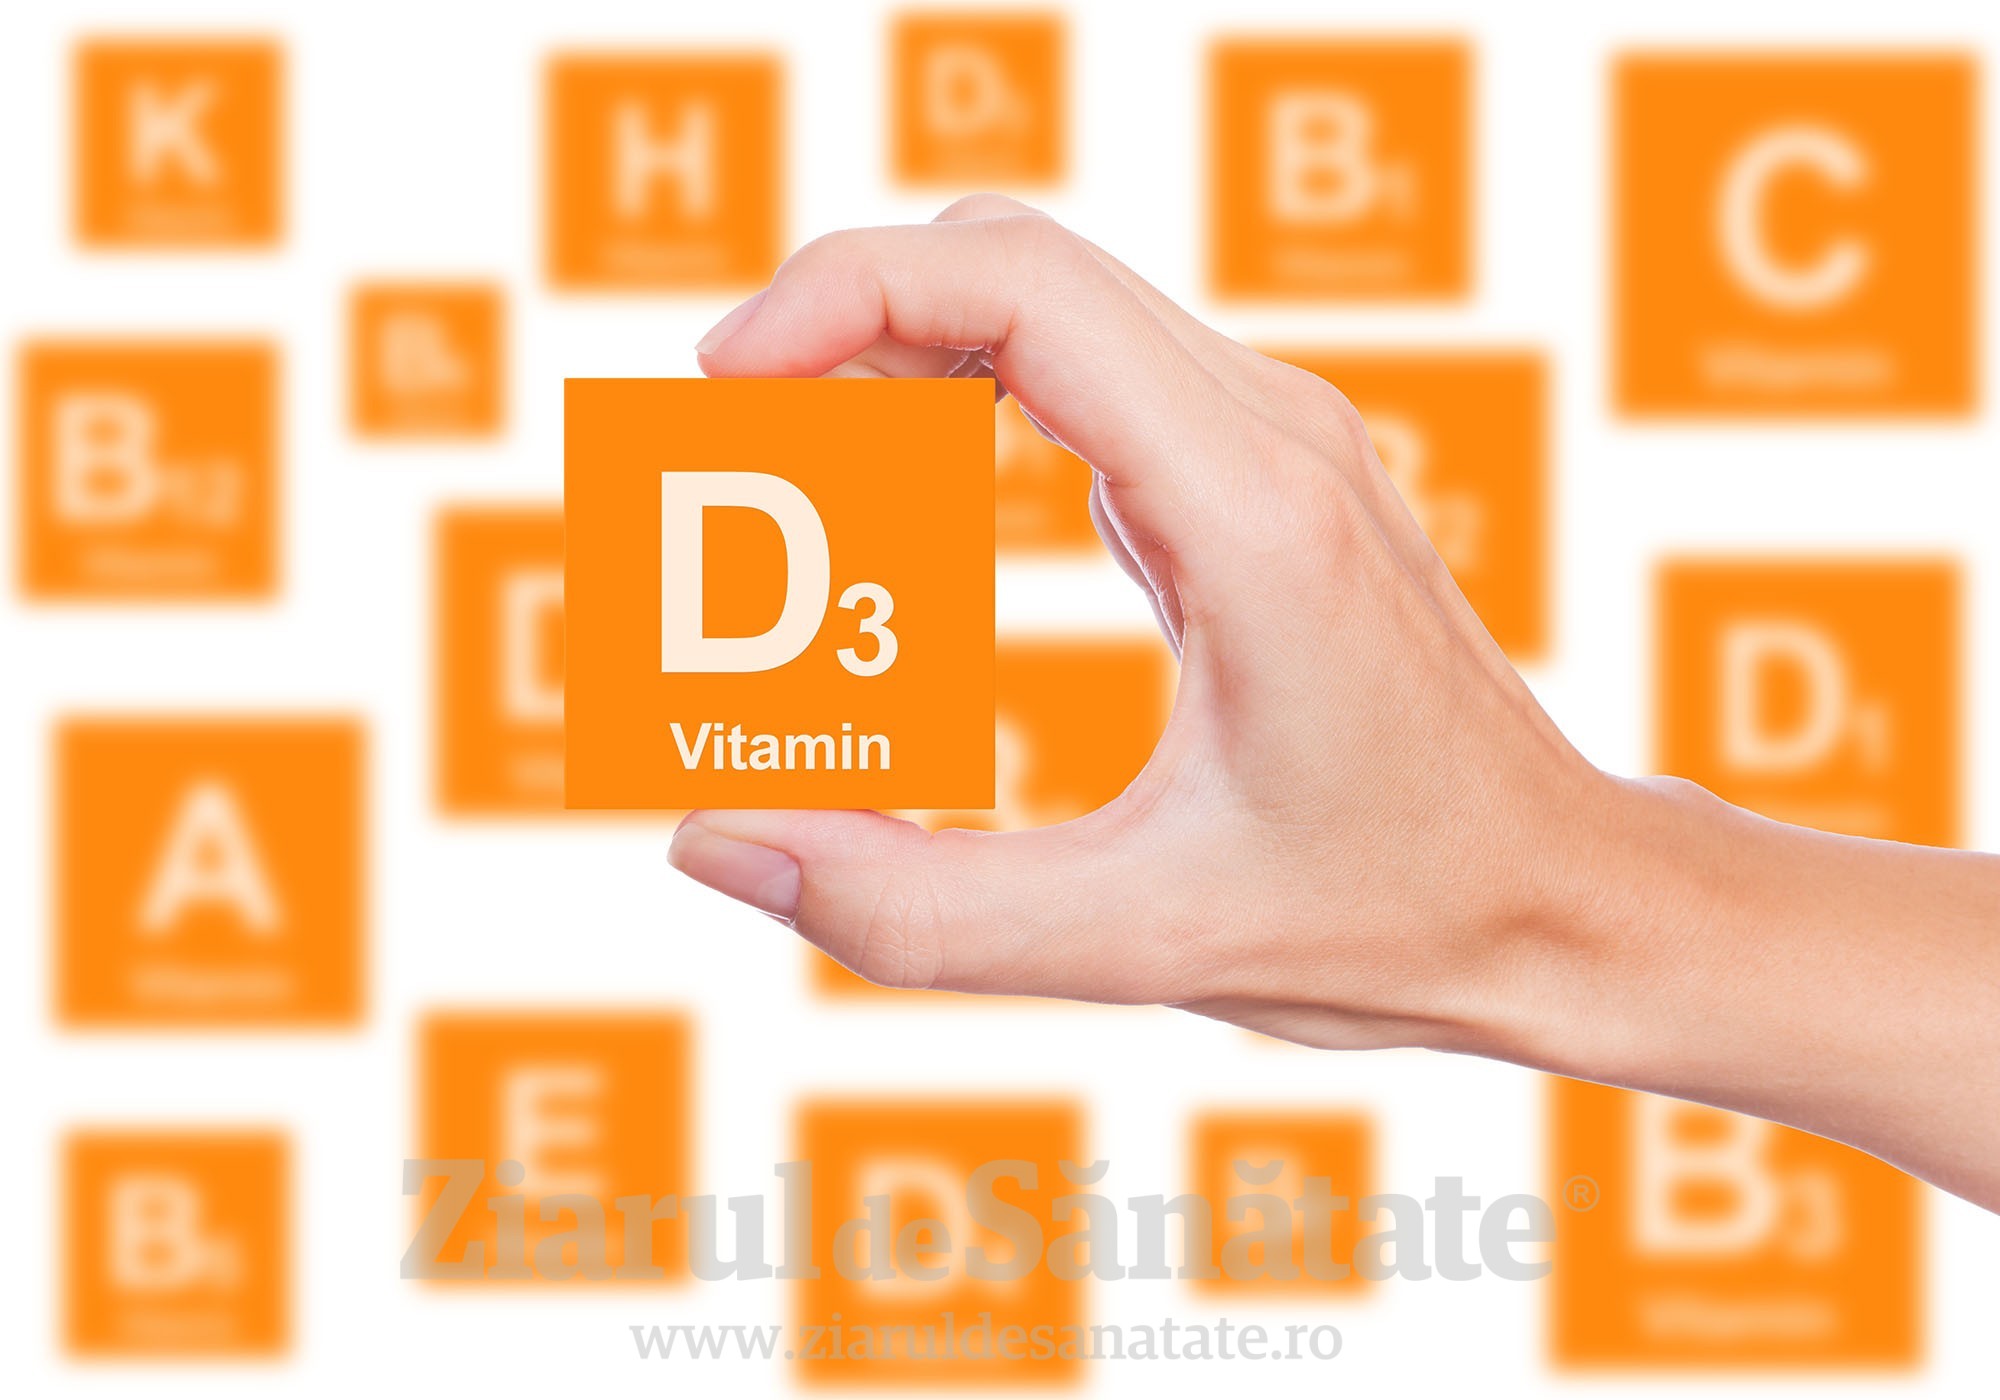 Specialistii ajuta vitamina d cu dureri articulare Ultima oră